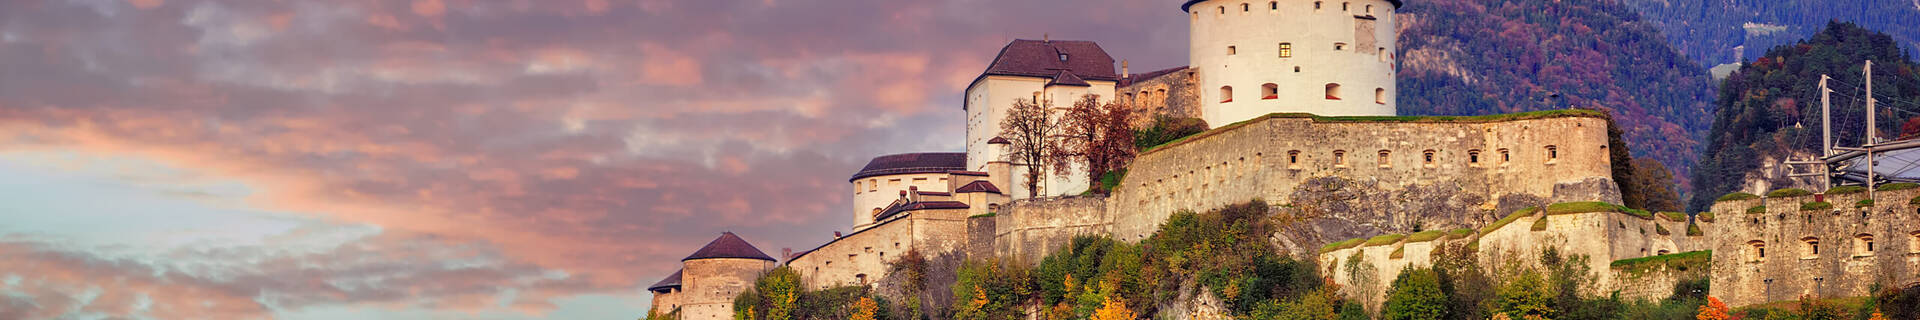 Bannerbild Kufstein Festung